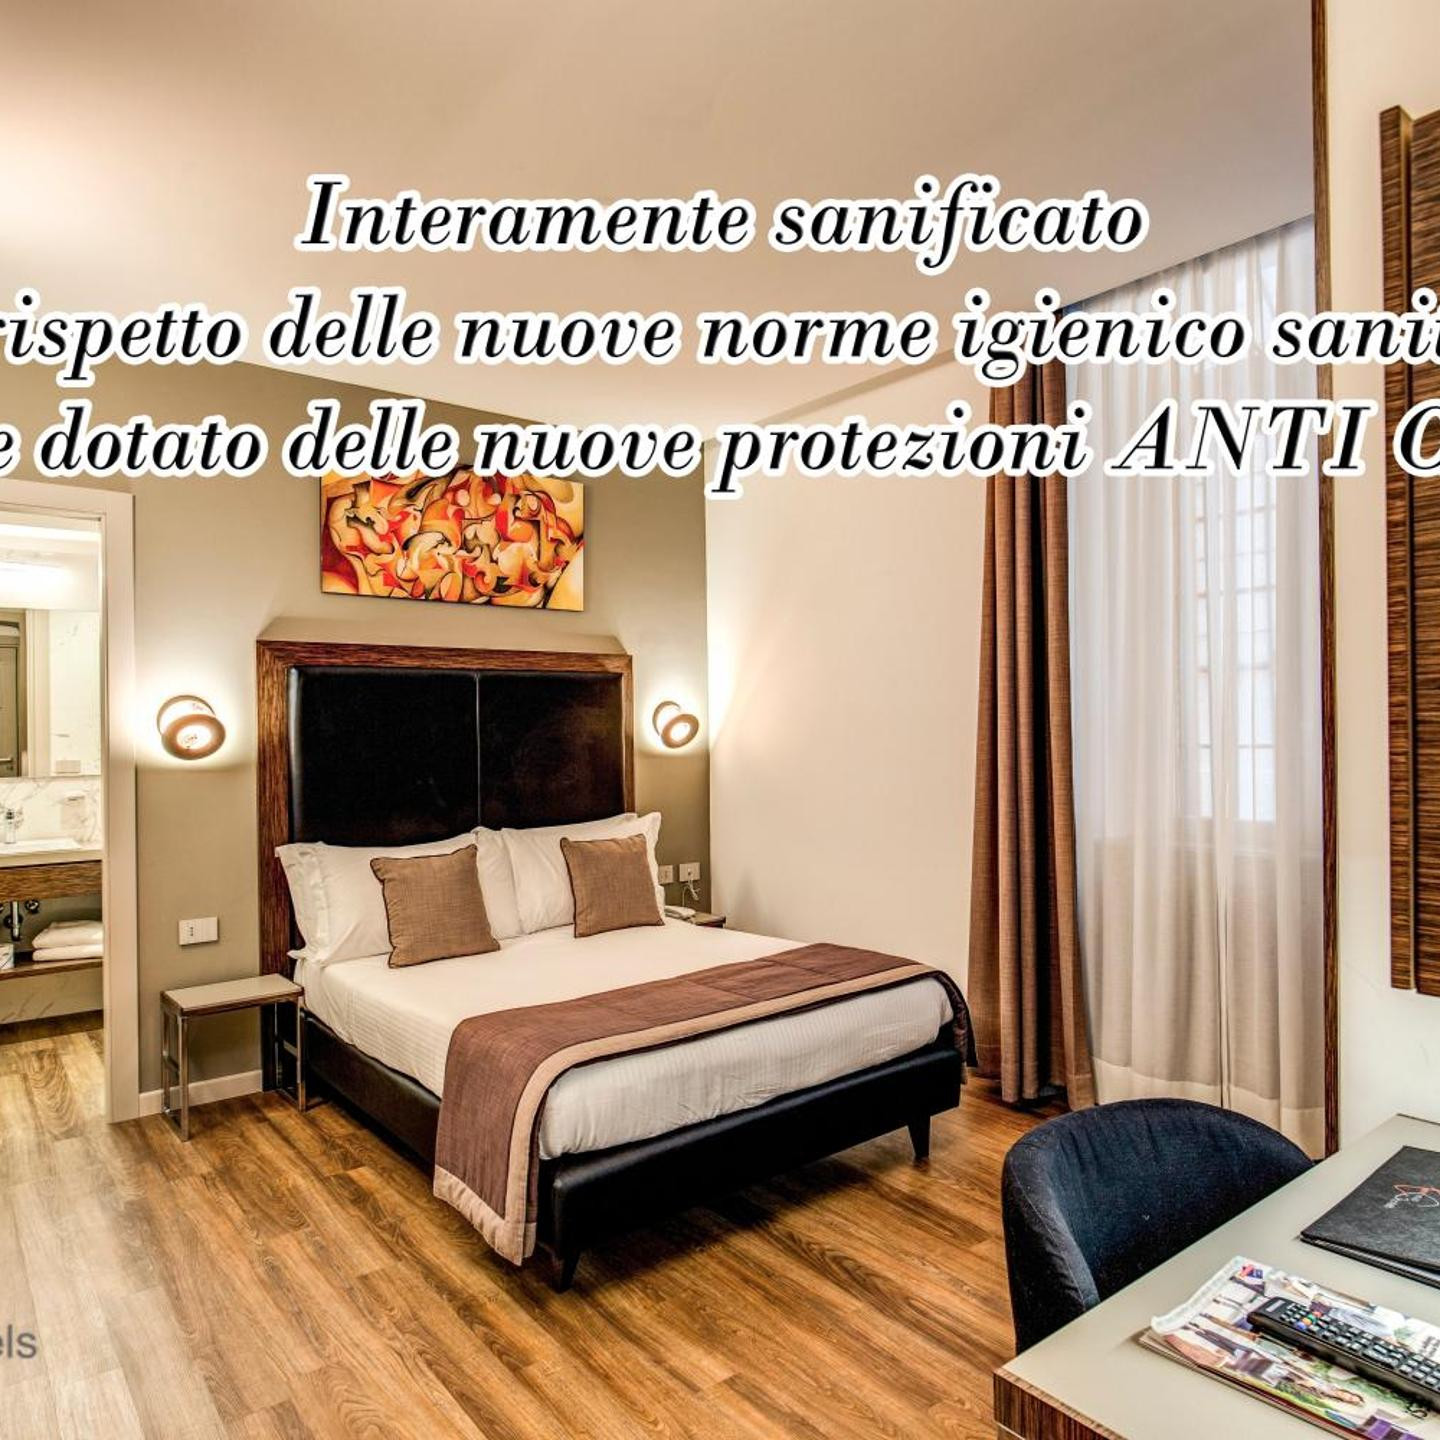 Al Manthia Hotel - Gruppo Trevi Hotels